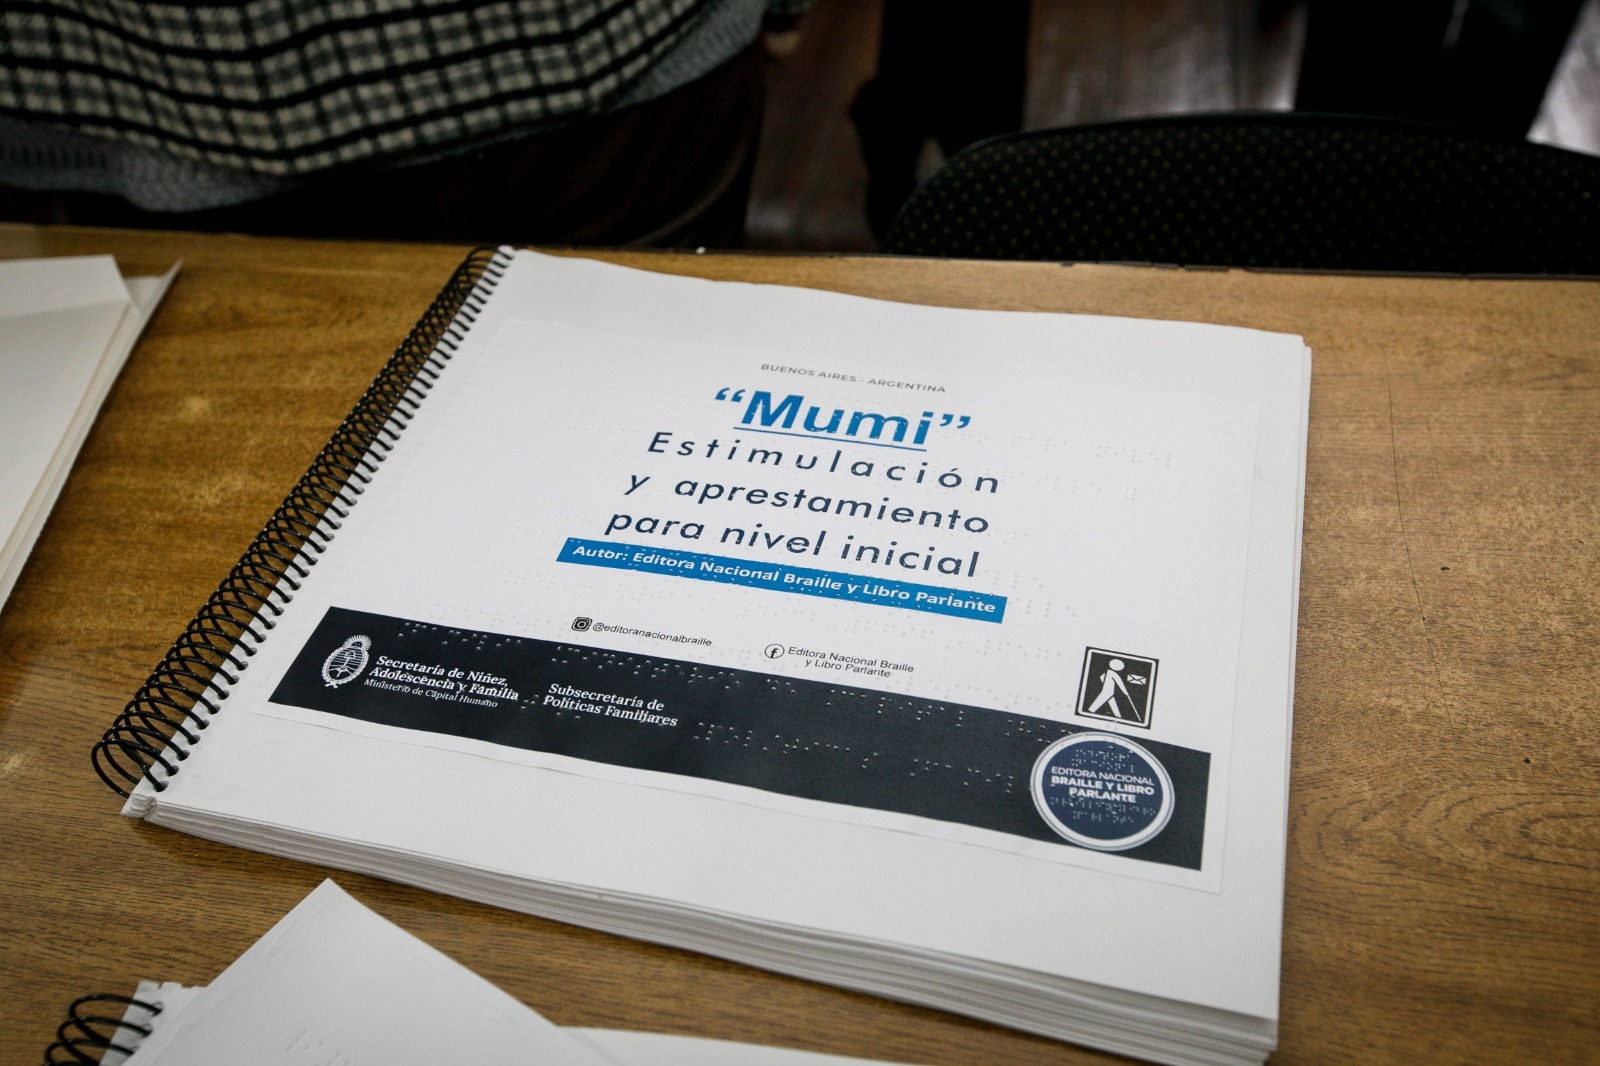 Libro confencionado en braille con el título "Mumi, estimulación y aprestamiento para nivel inicial".